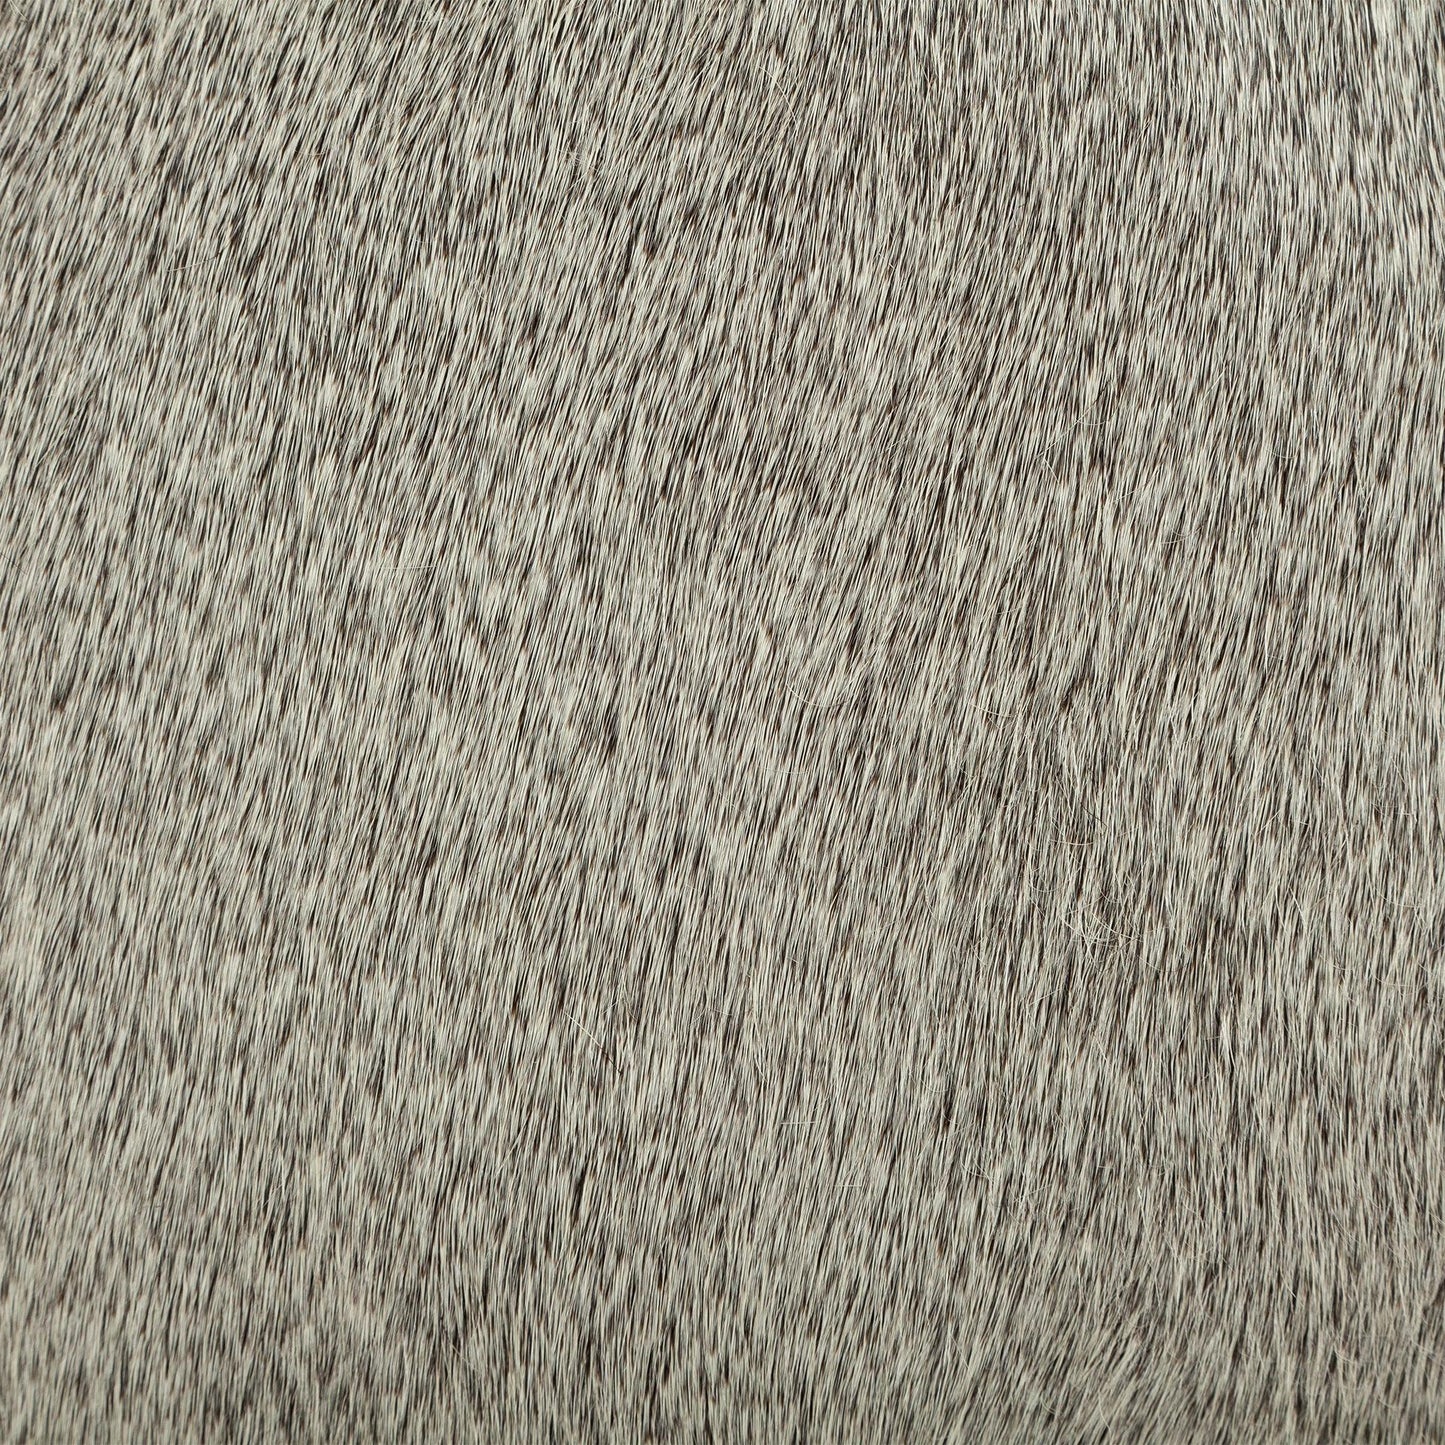 Zahavi I 20" Grey-toned hair-on-hide ottoman